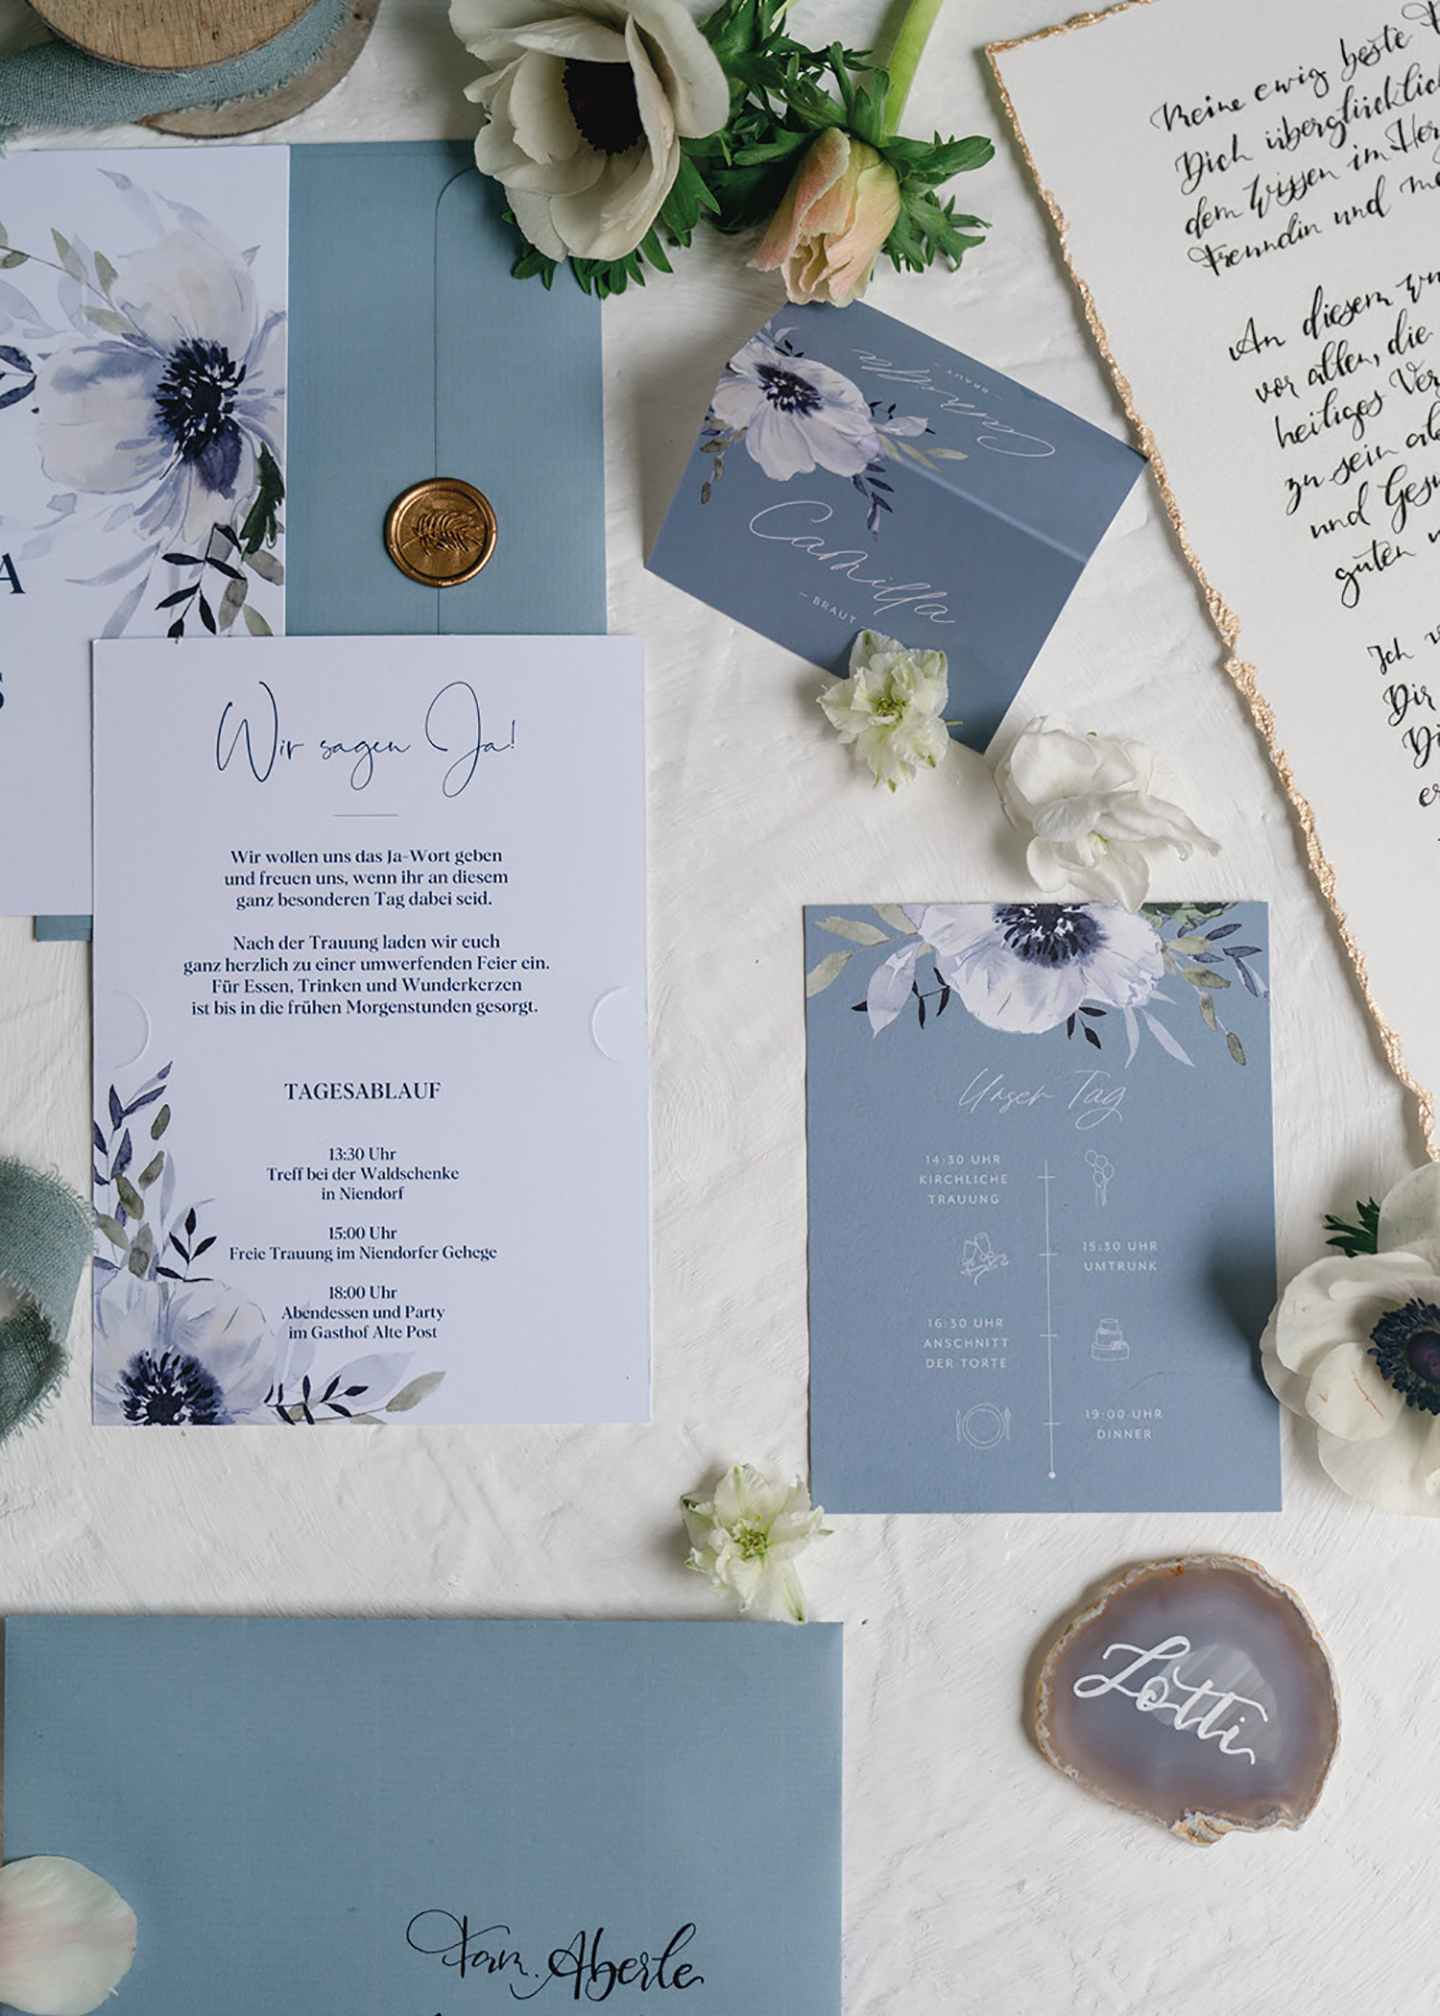 Die Hochzeitspapeterie des Paares wurde in hellblauen und weißen Tönen gestaltet. Auf der Papeterie findet sich eine detailtreu gezeichnete große Blüte in weiß und dunkelblau. 